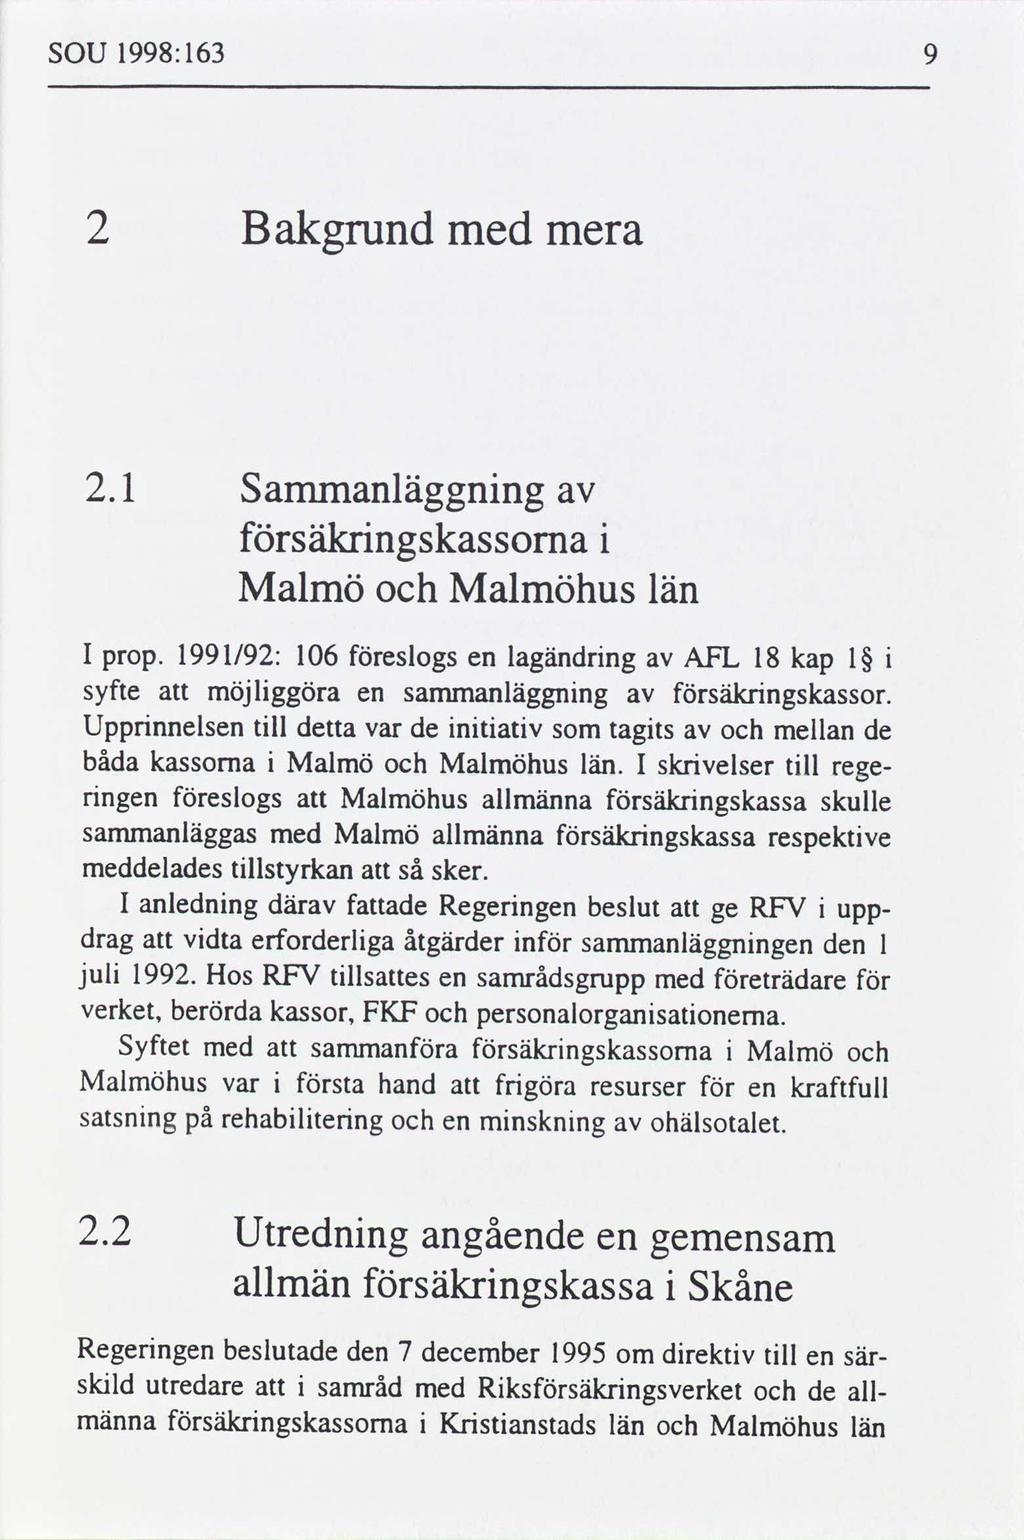 SOU 1998: 163 2 Bakgrund med mera 2.1 Sammanläggnng säkrngskassorna Malmö Malmöhus län I prop. 1991/92: 106 eslogs en lagändrng AFL 18 kap syfte möjlggöra en sammanläggnng säkrngskassor.